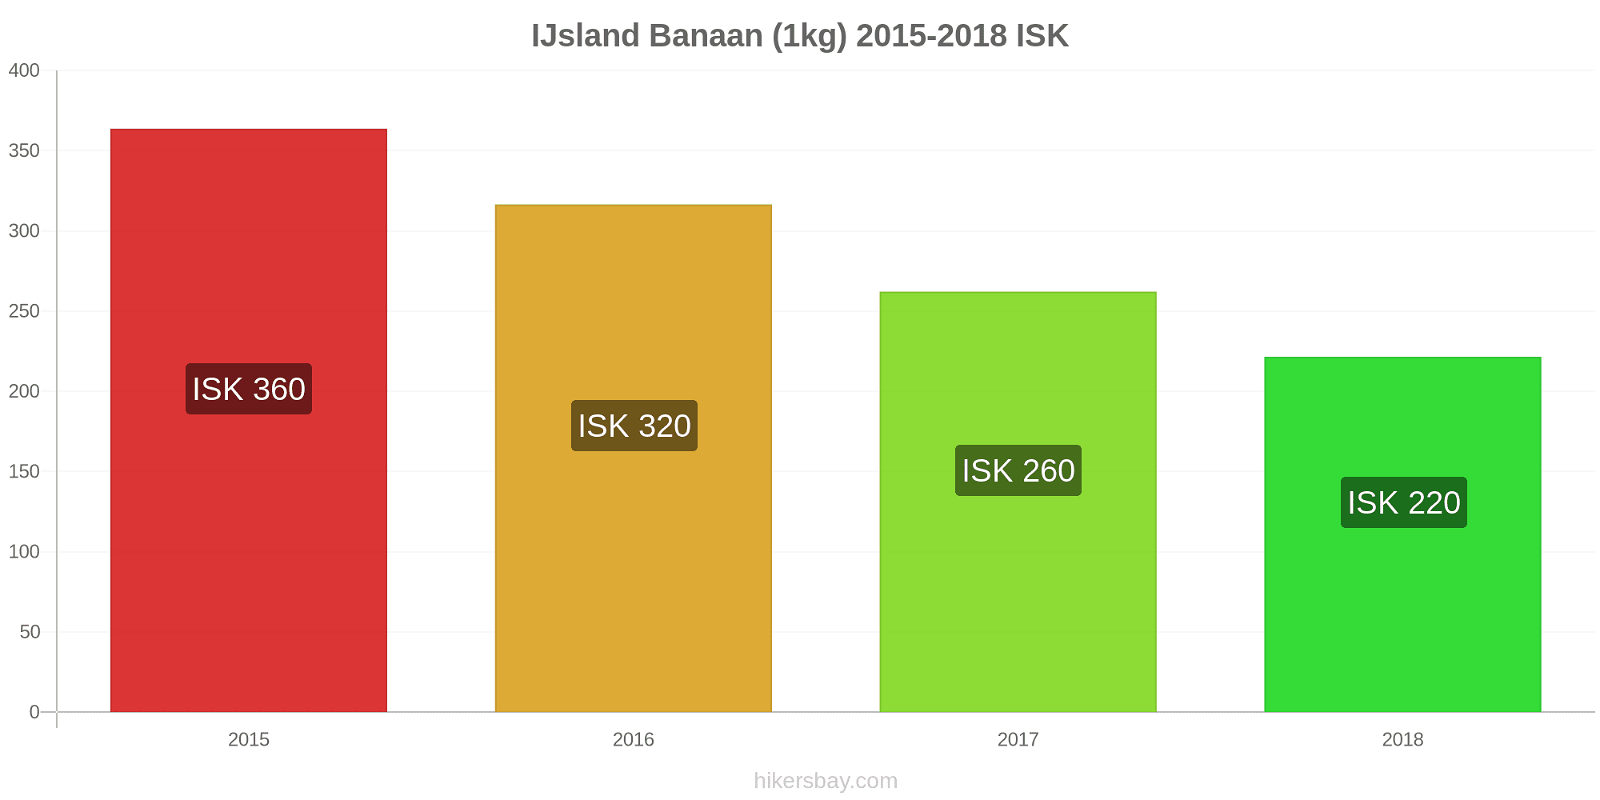 IJsland prijswijzigingen Bananen (1kg) hikersbay.com